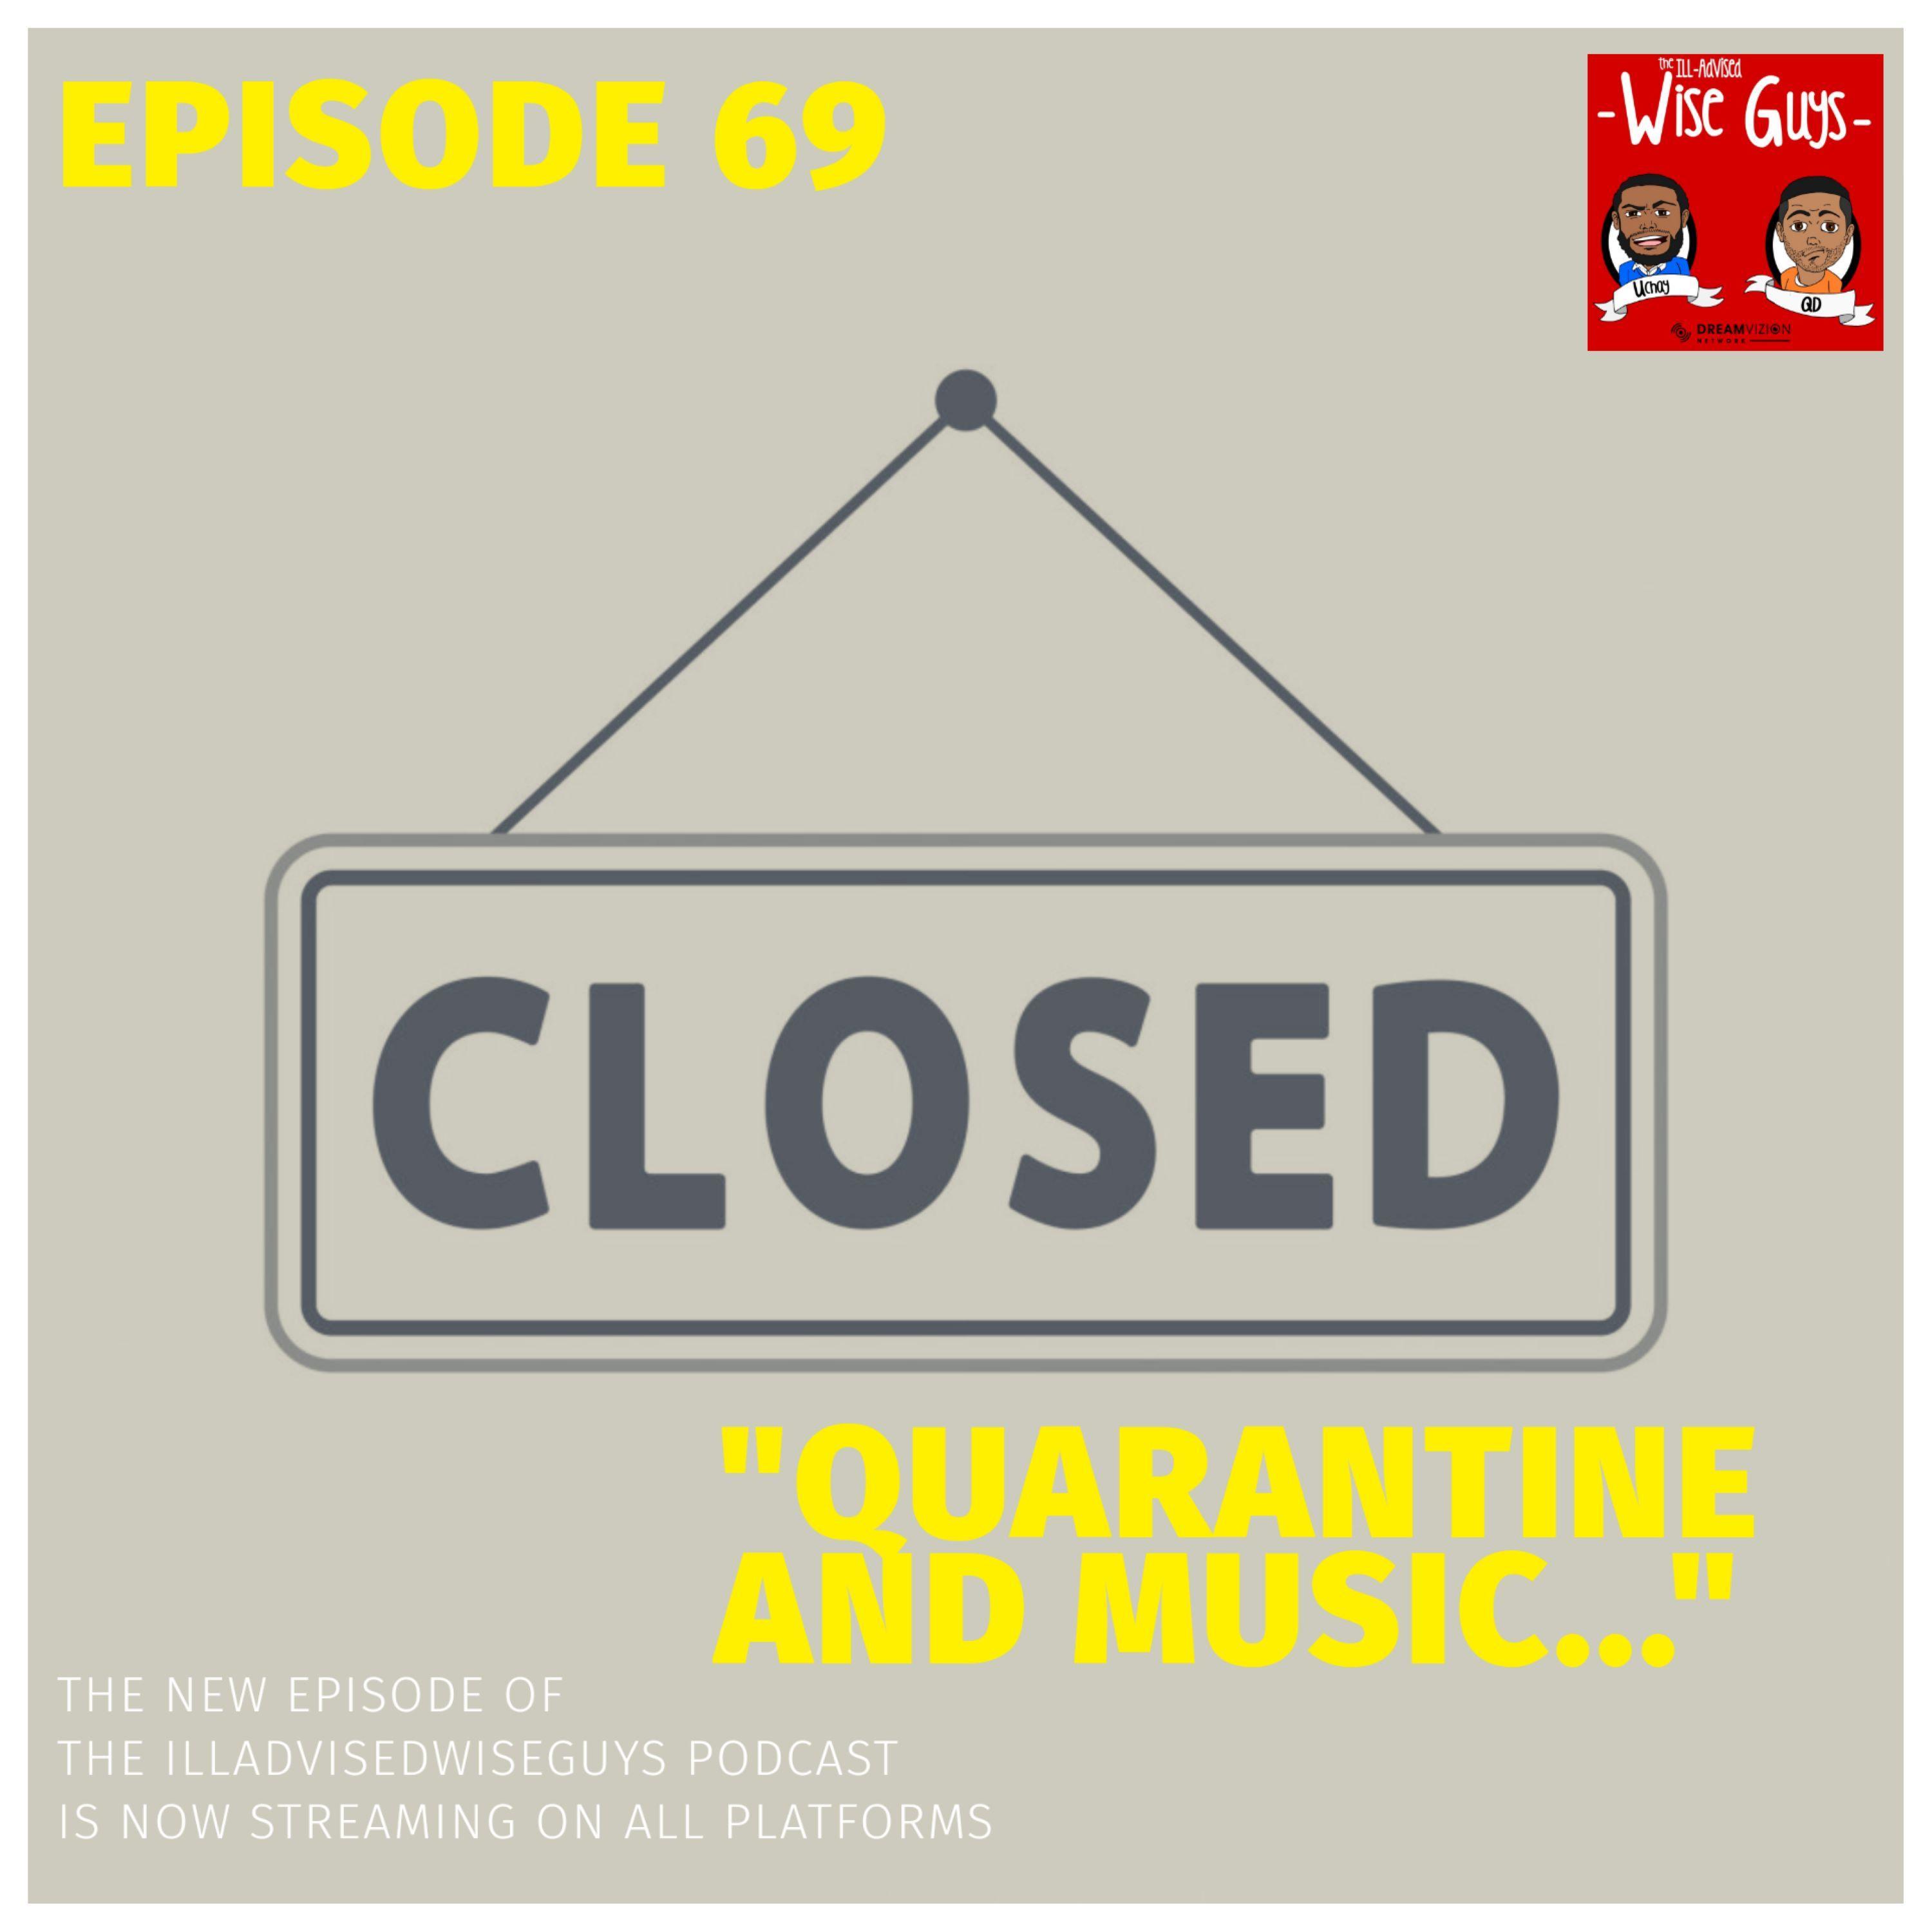 Episode 69 - "Quarantine and Music..." Image